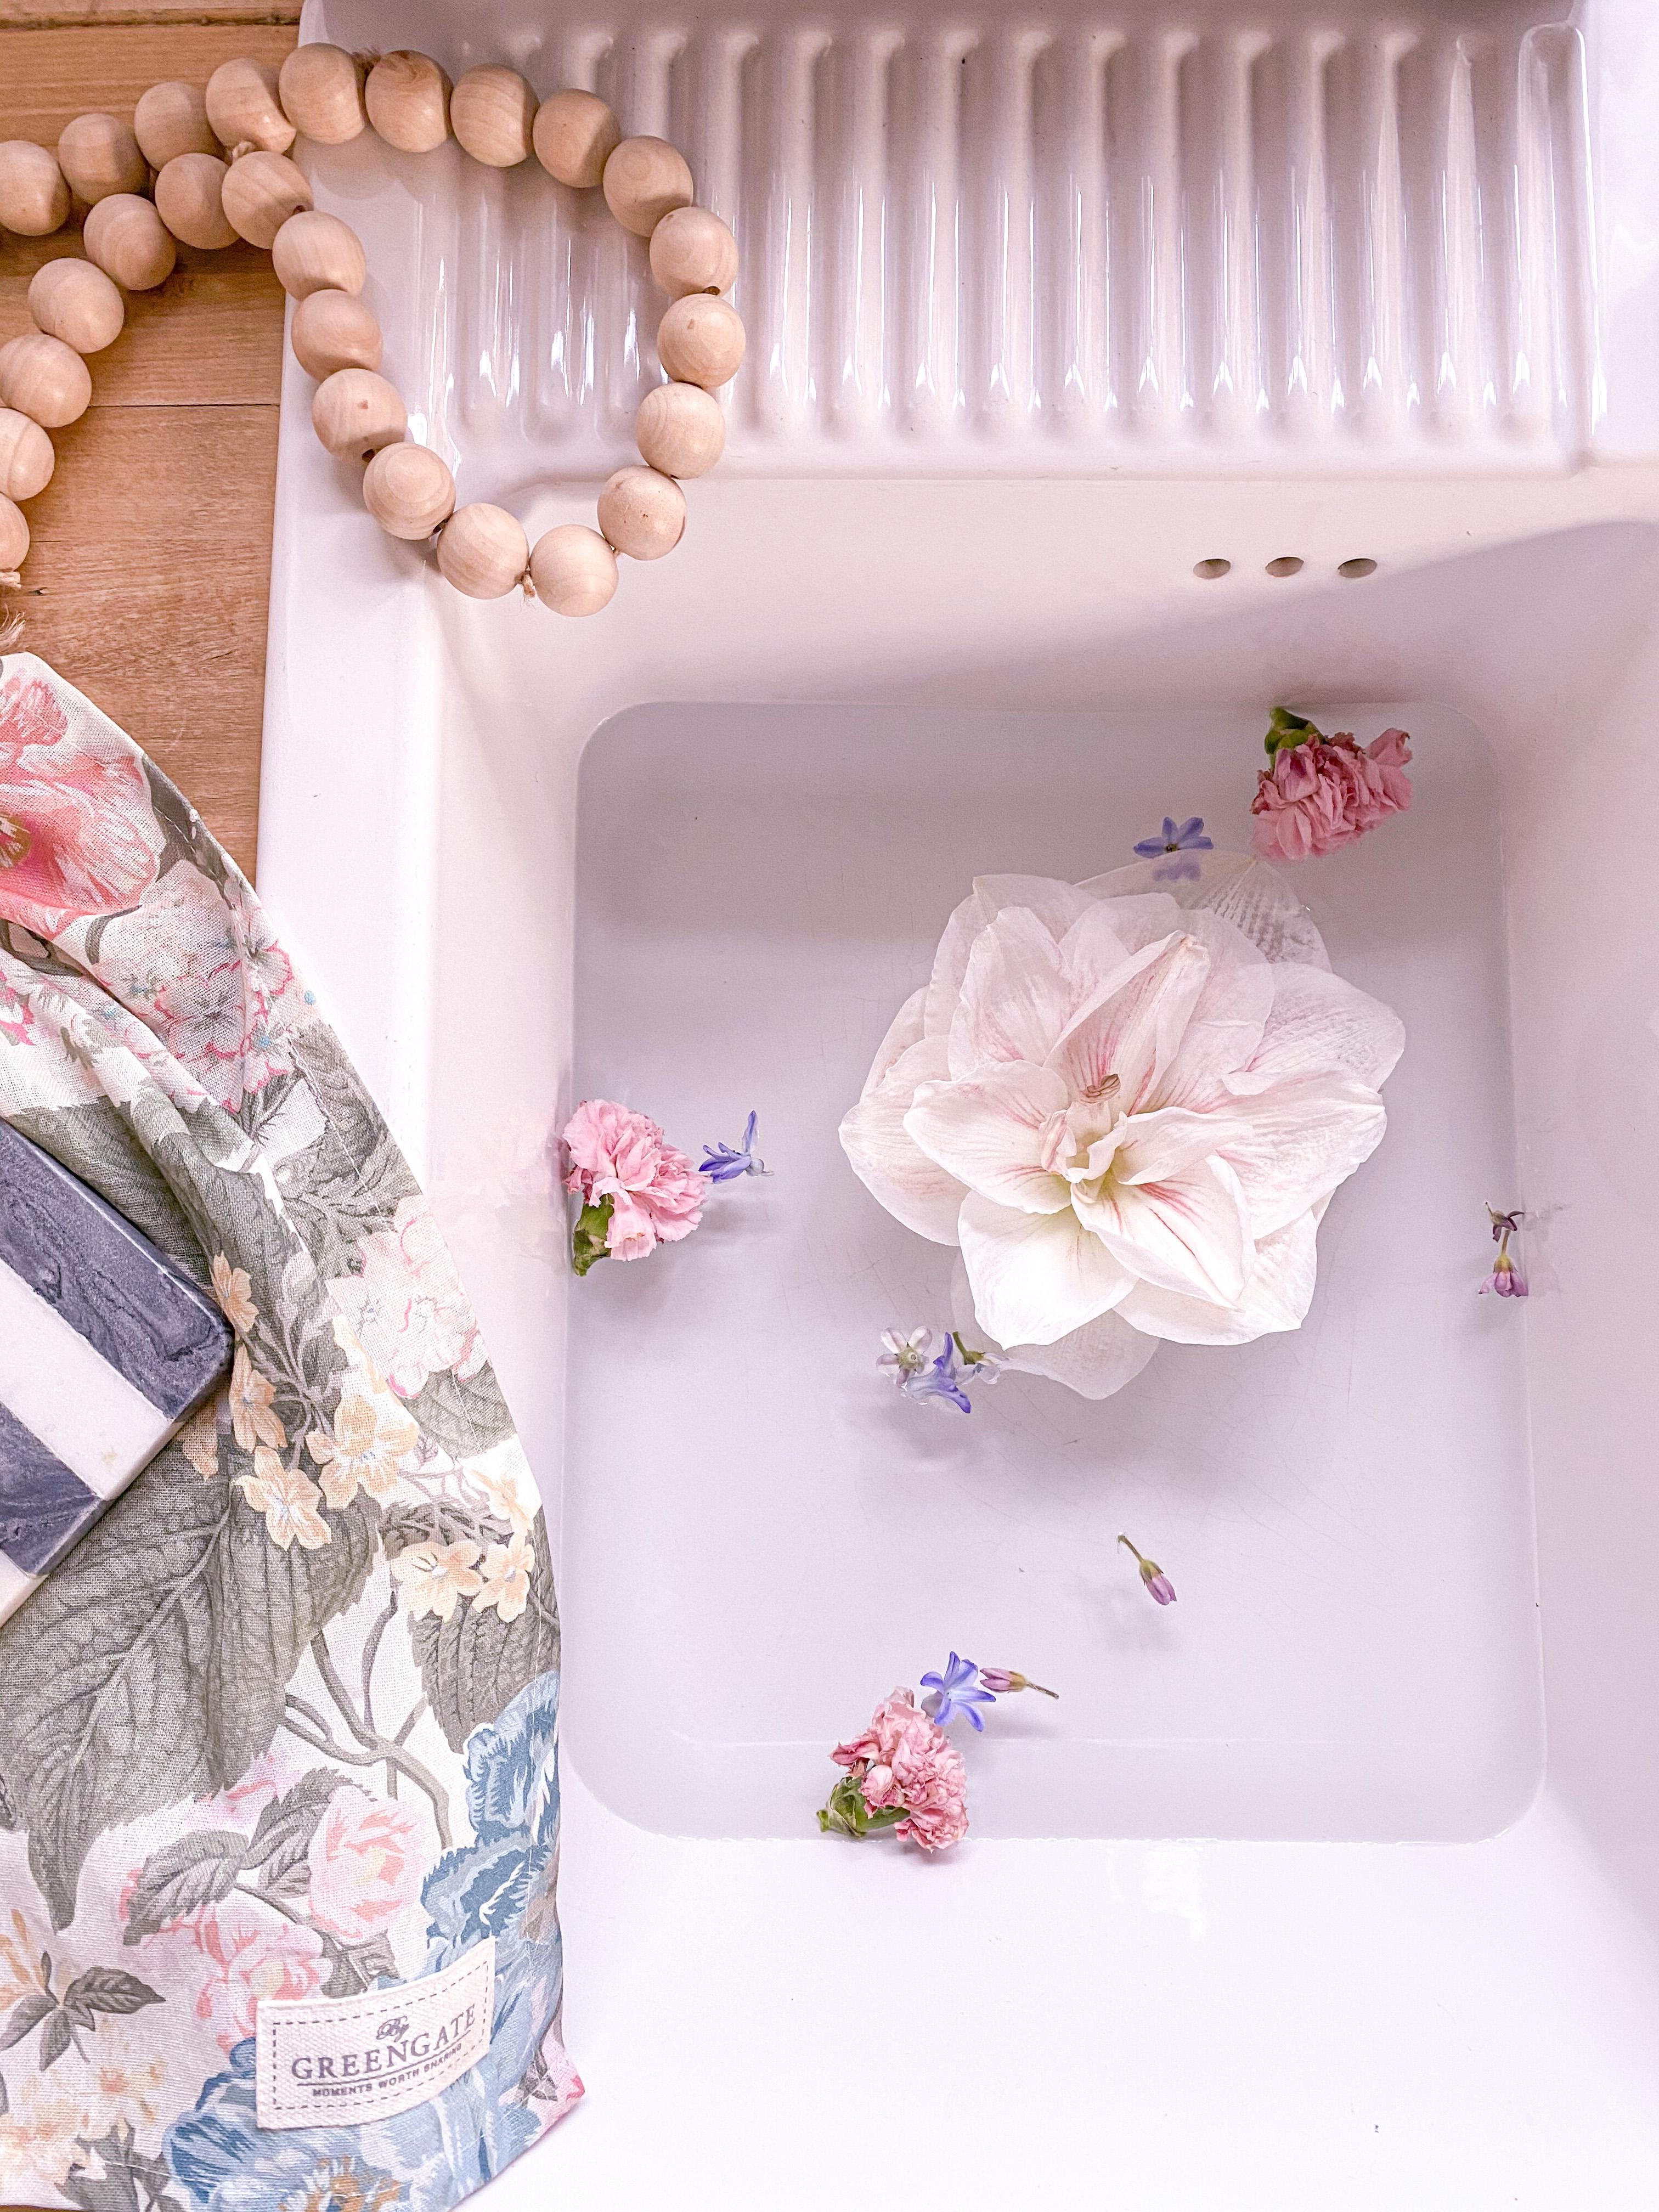 Amaryllisliebe
#flowerlover#details#blumenmädchen#kitchendetails#flowerpic